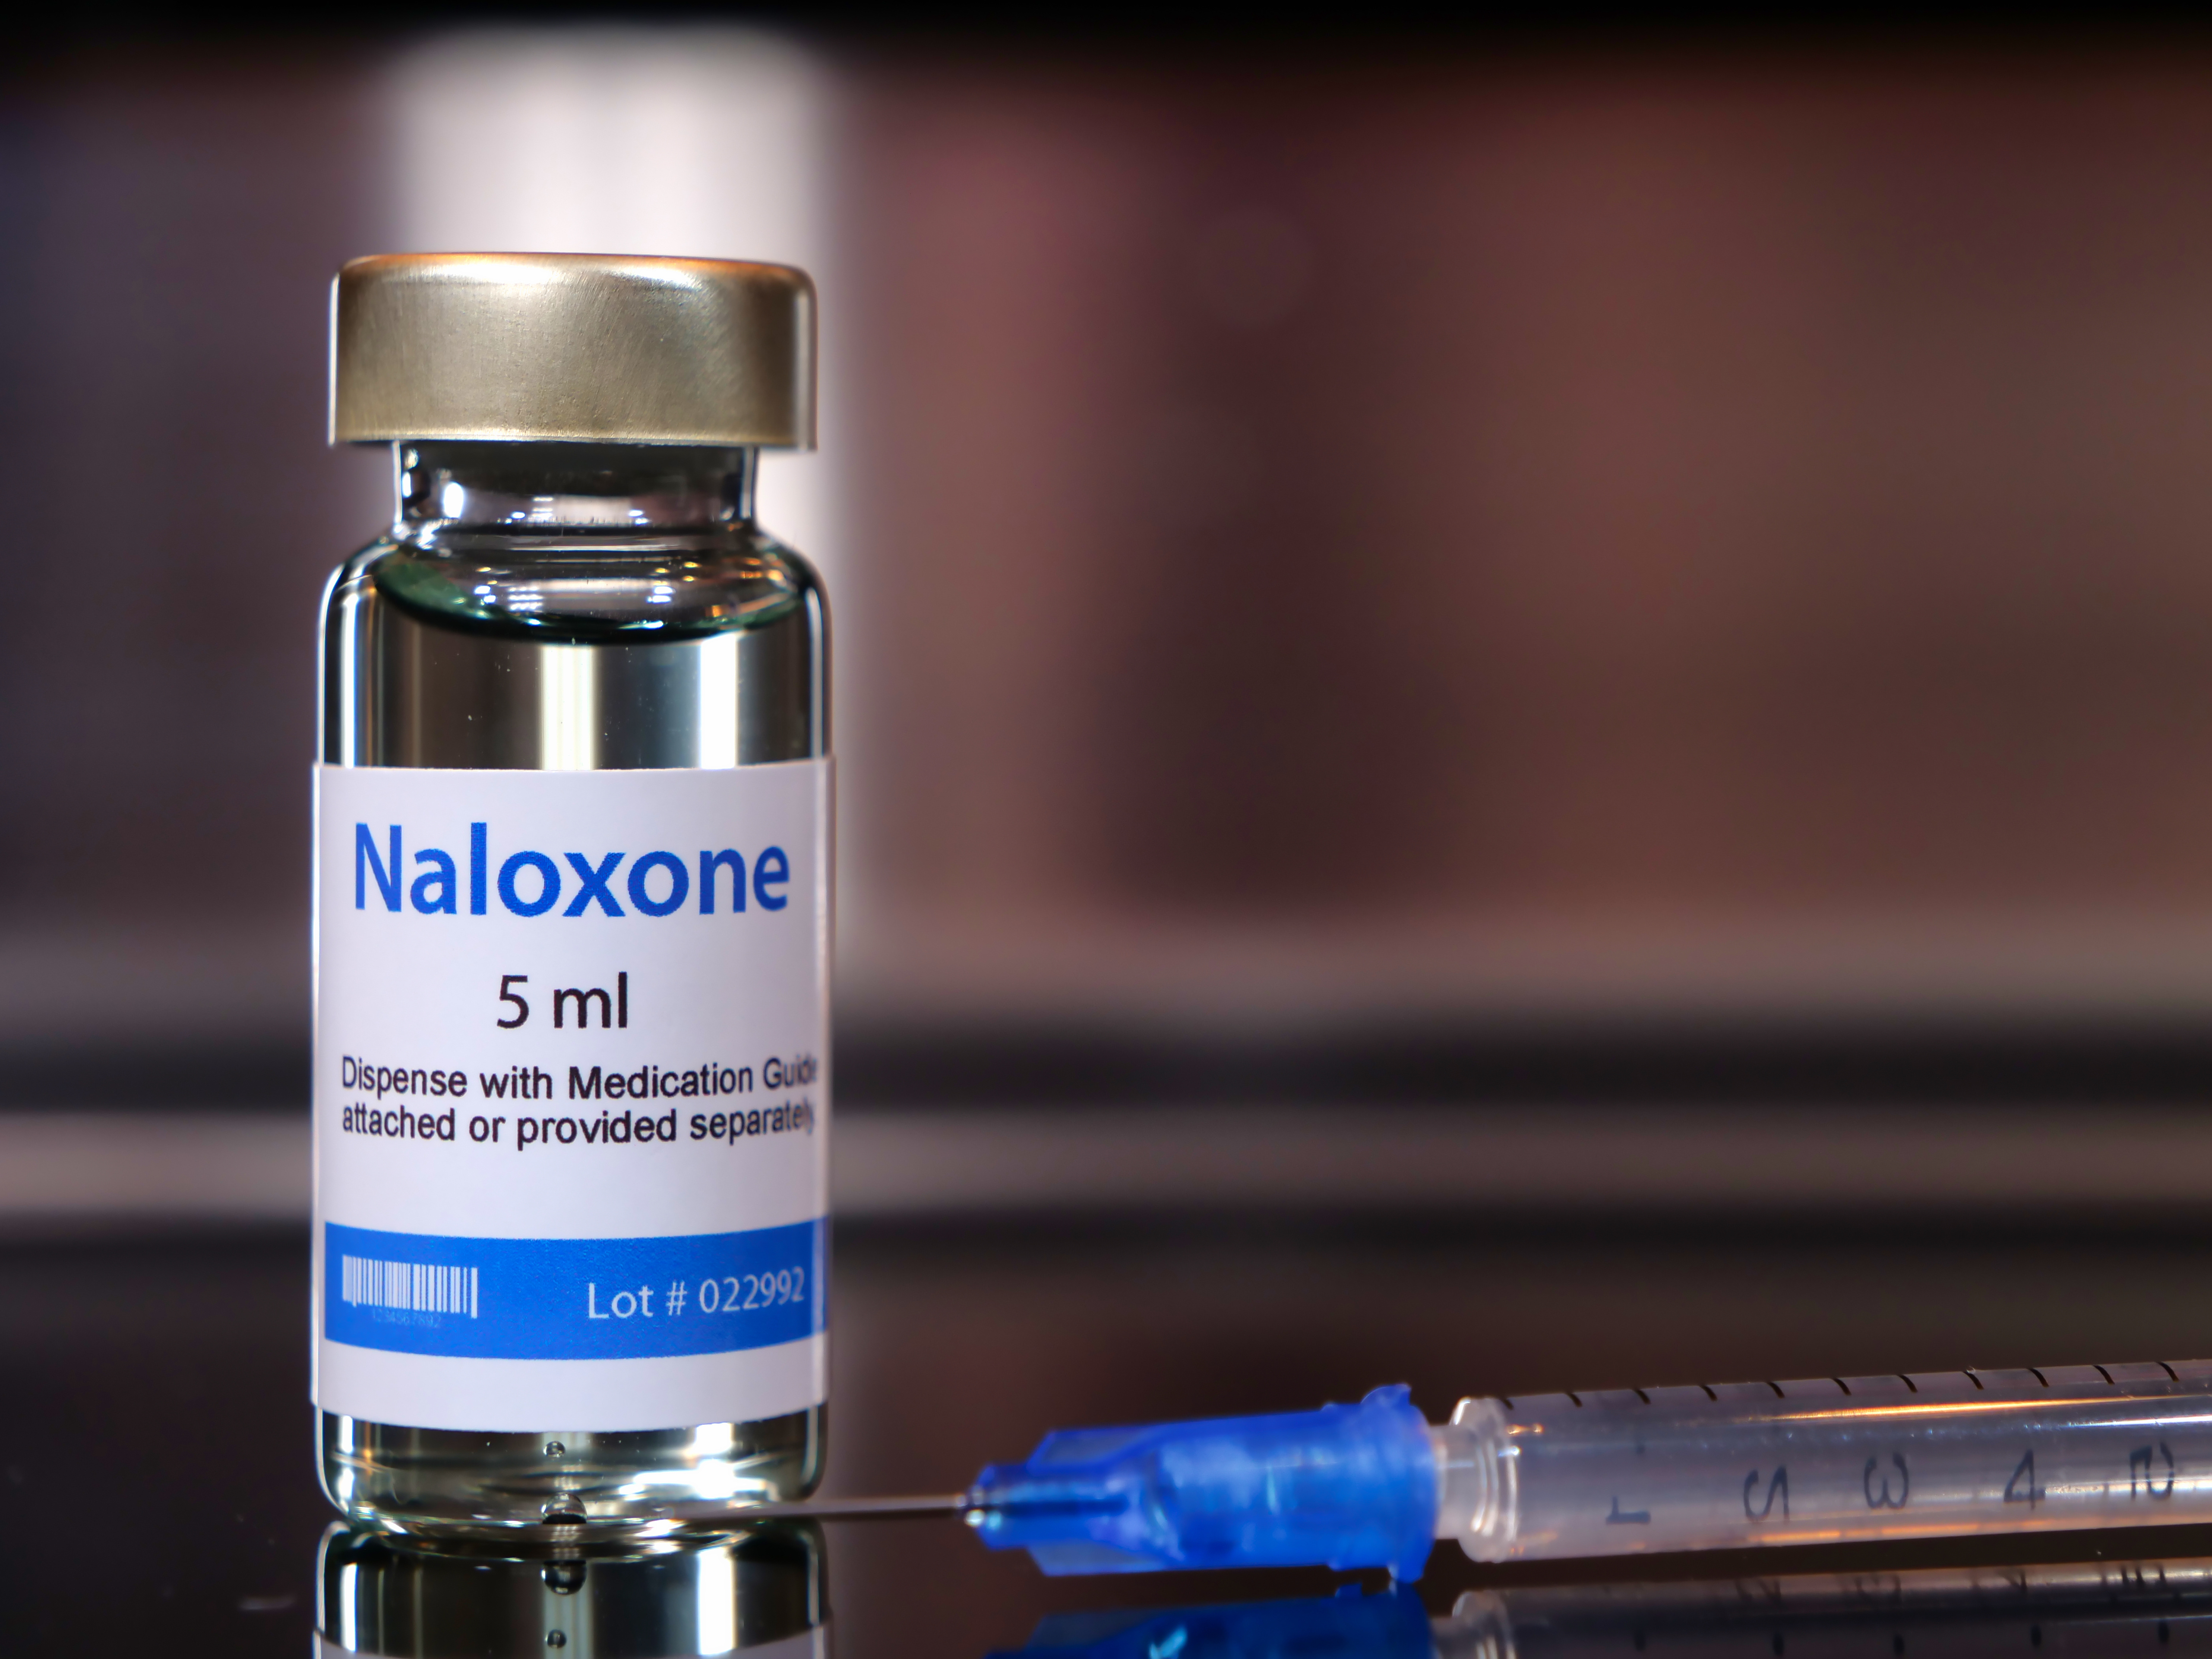 Vial of naloxone with syringe